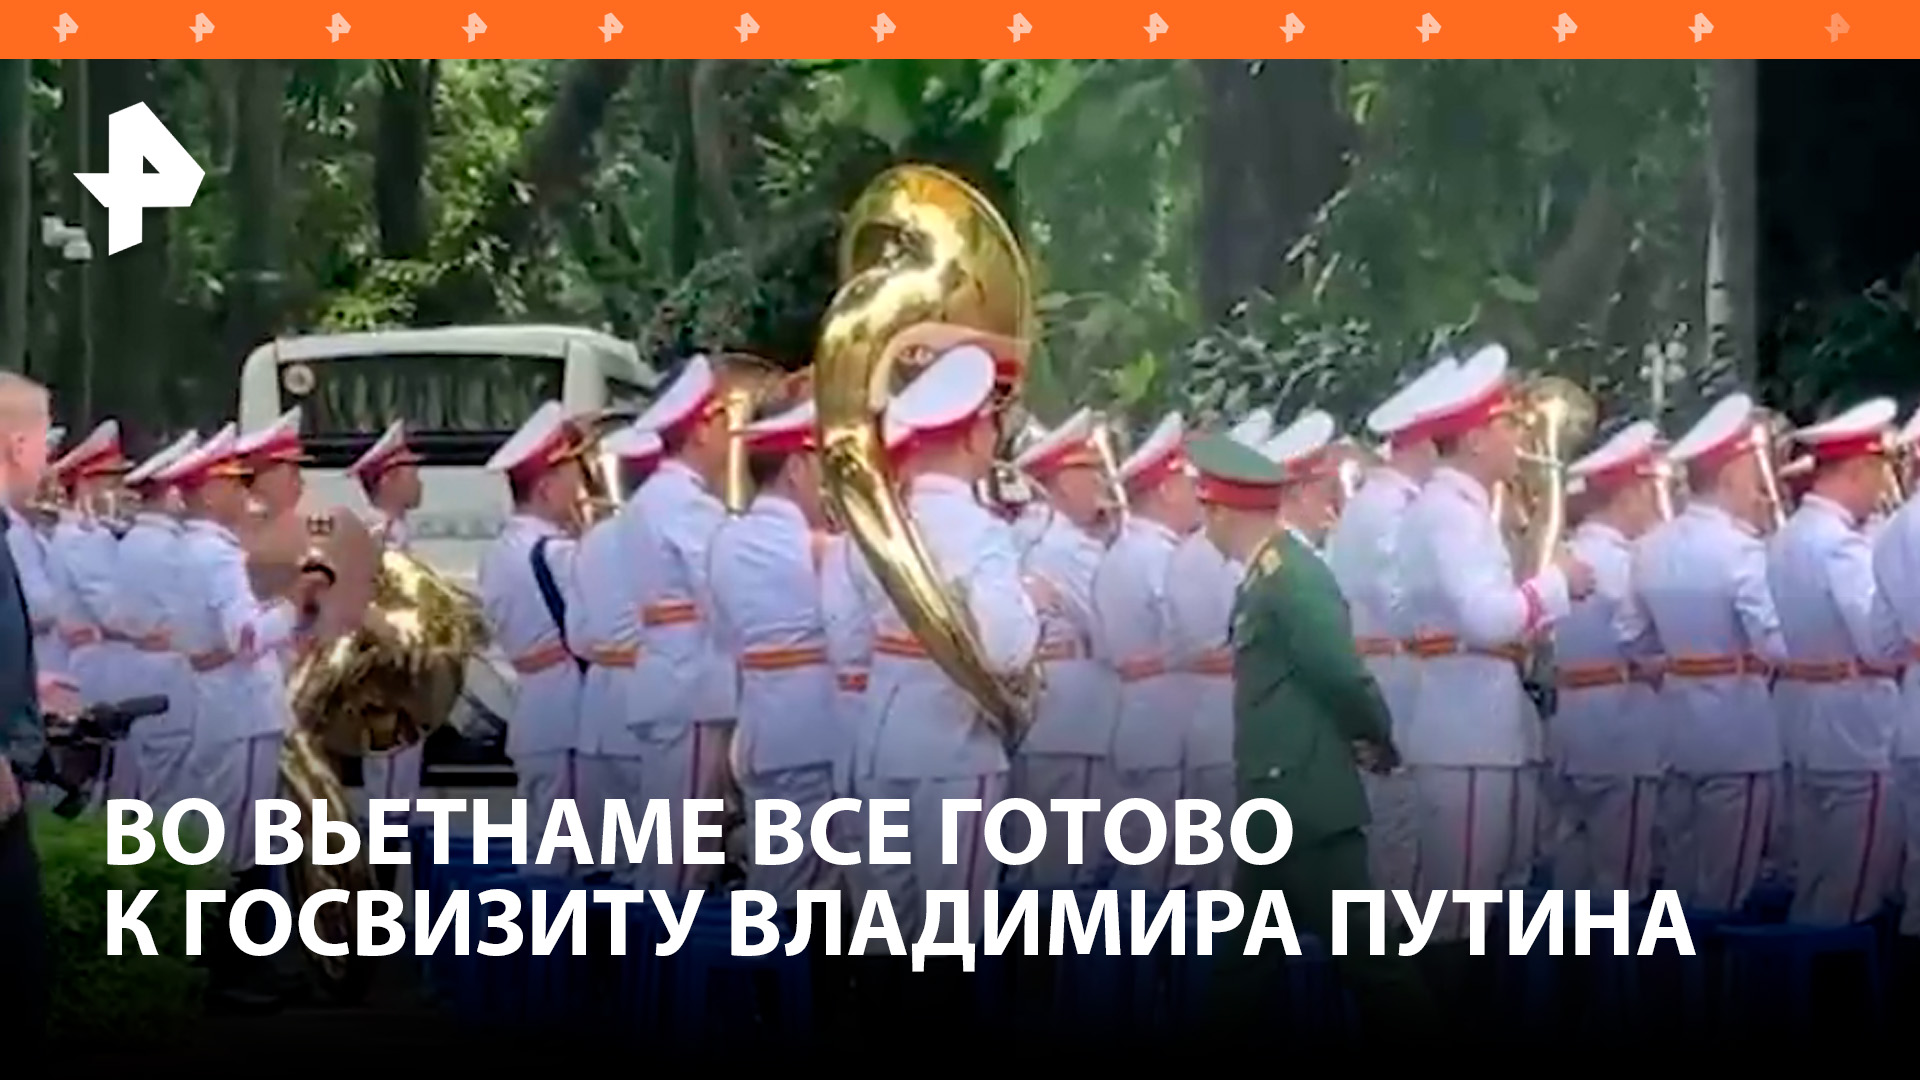 В Ханое все готово к началу госвизита Владимира Путина во Вьетнам / РЕН Новости